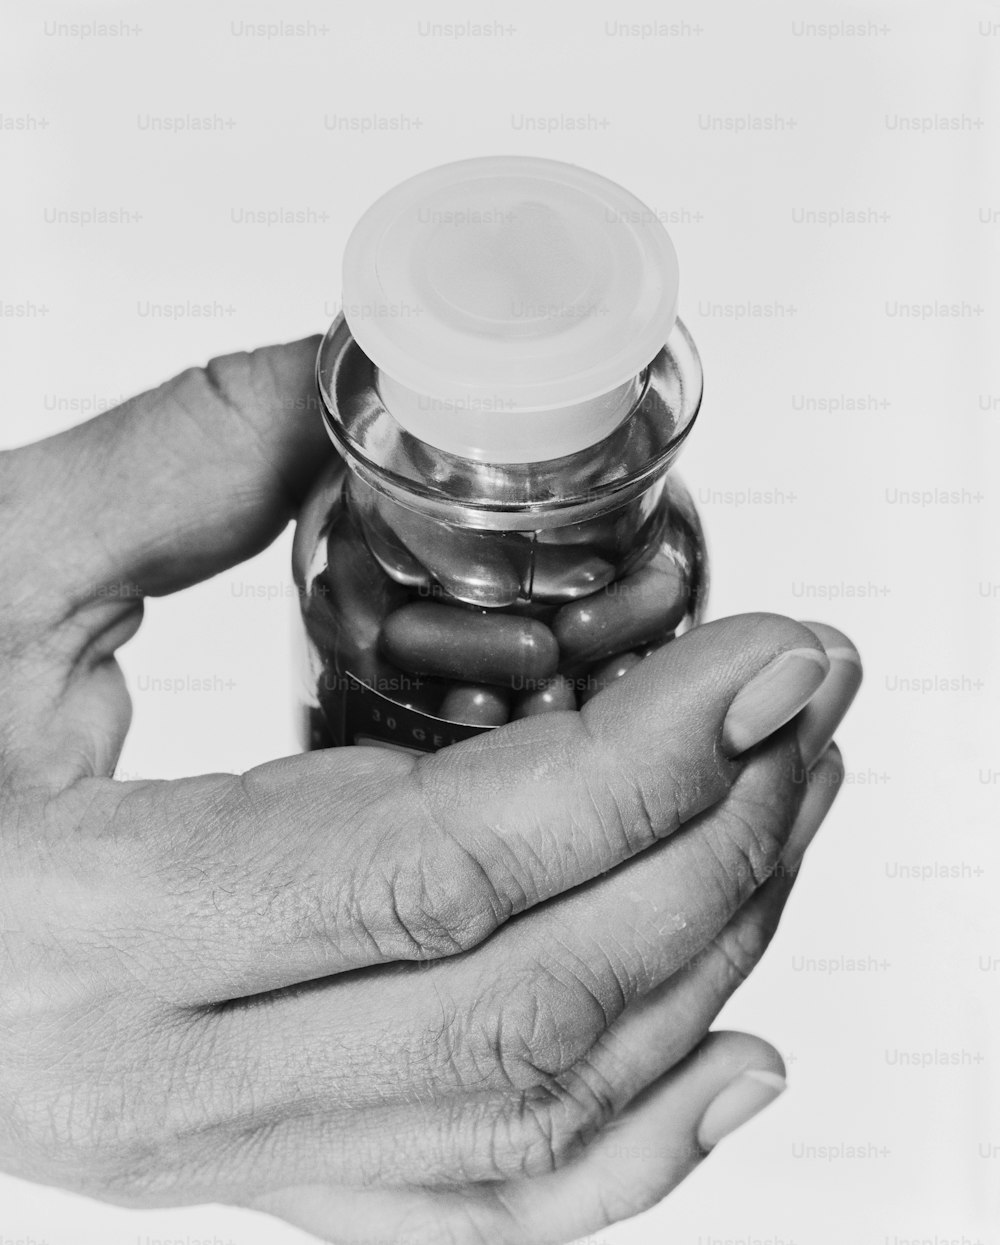 Una foto in bianco e nero di due mani che reggono un barattolo di pillole